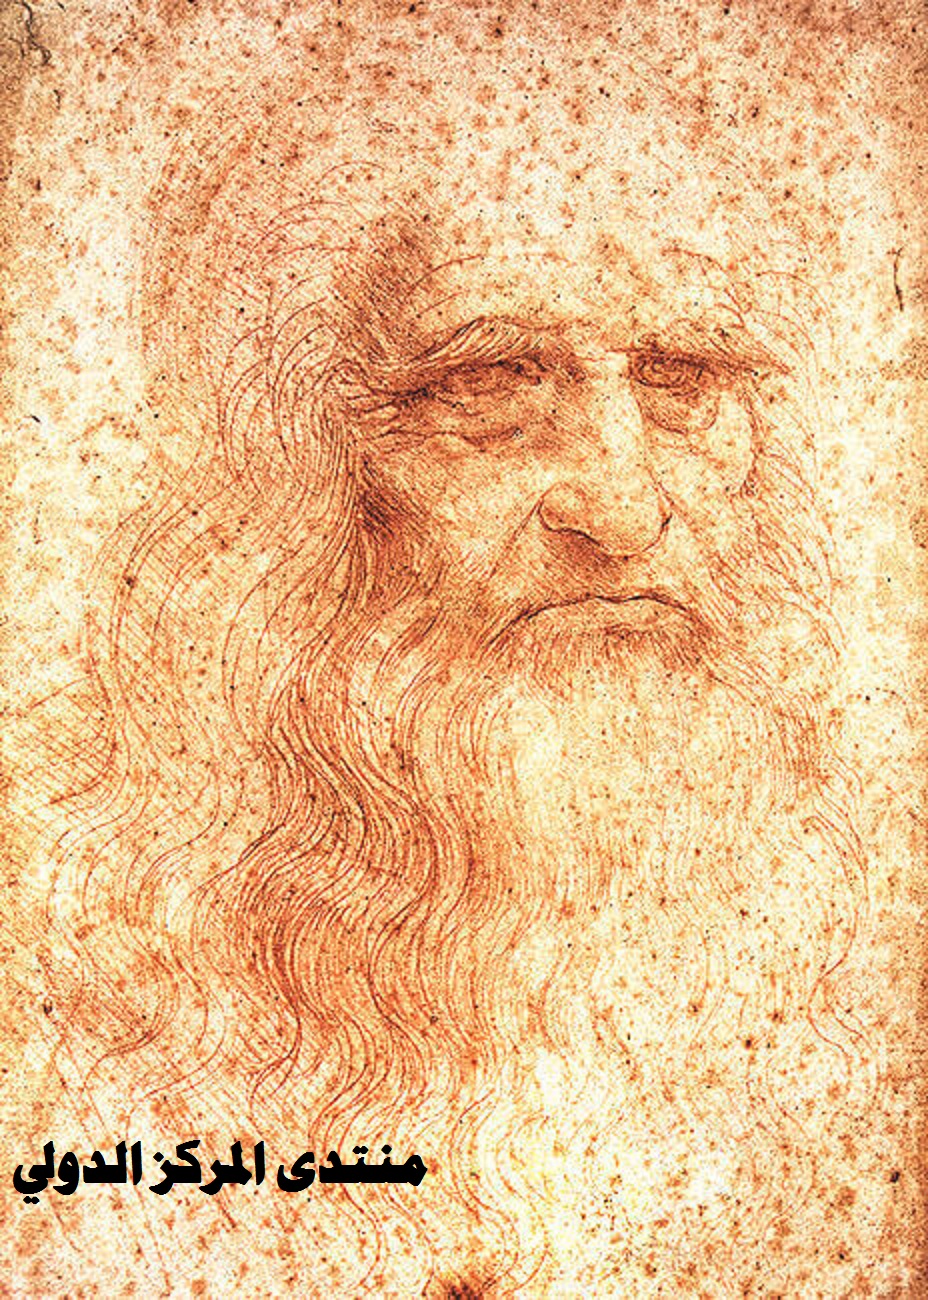 اجمل اللوحات للرسام العالمى  ليوناردو دافنشي Self-p10